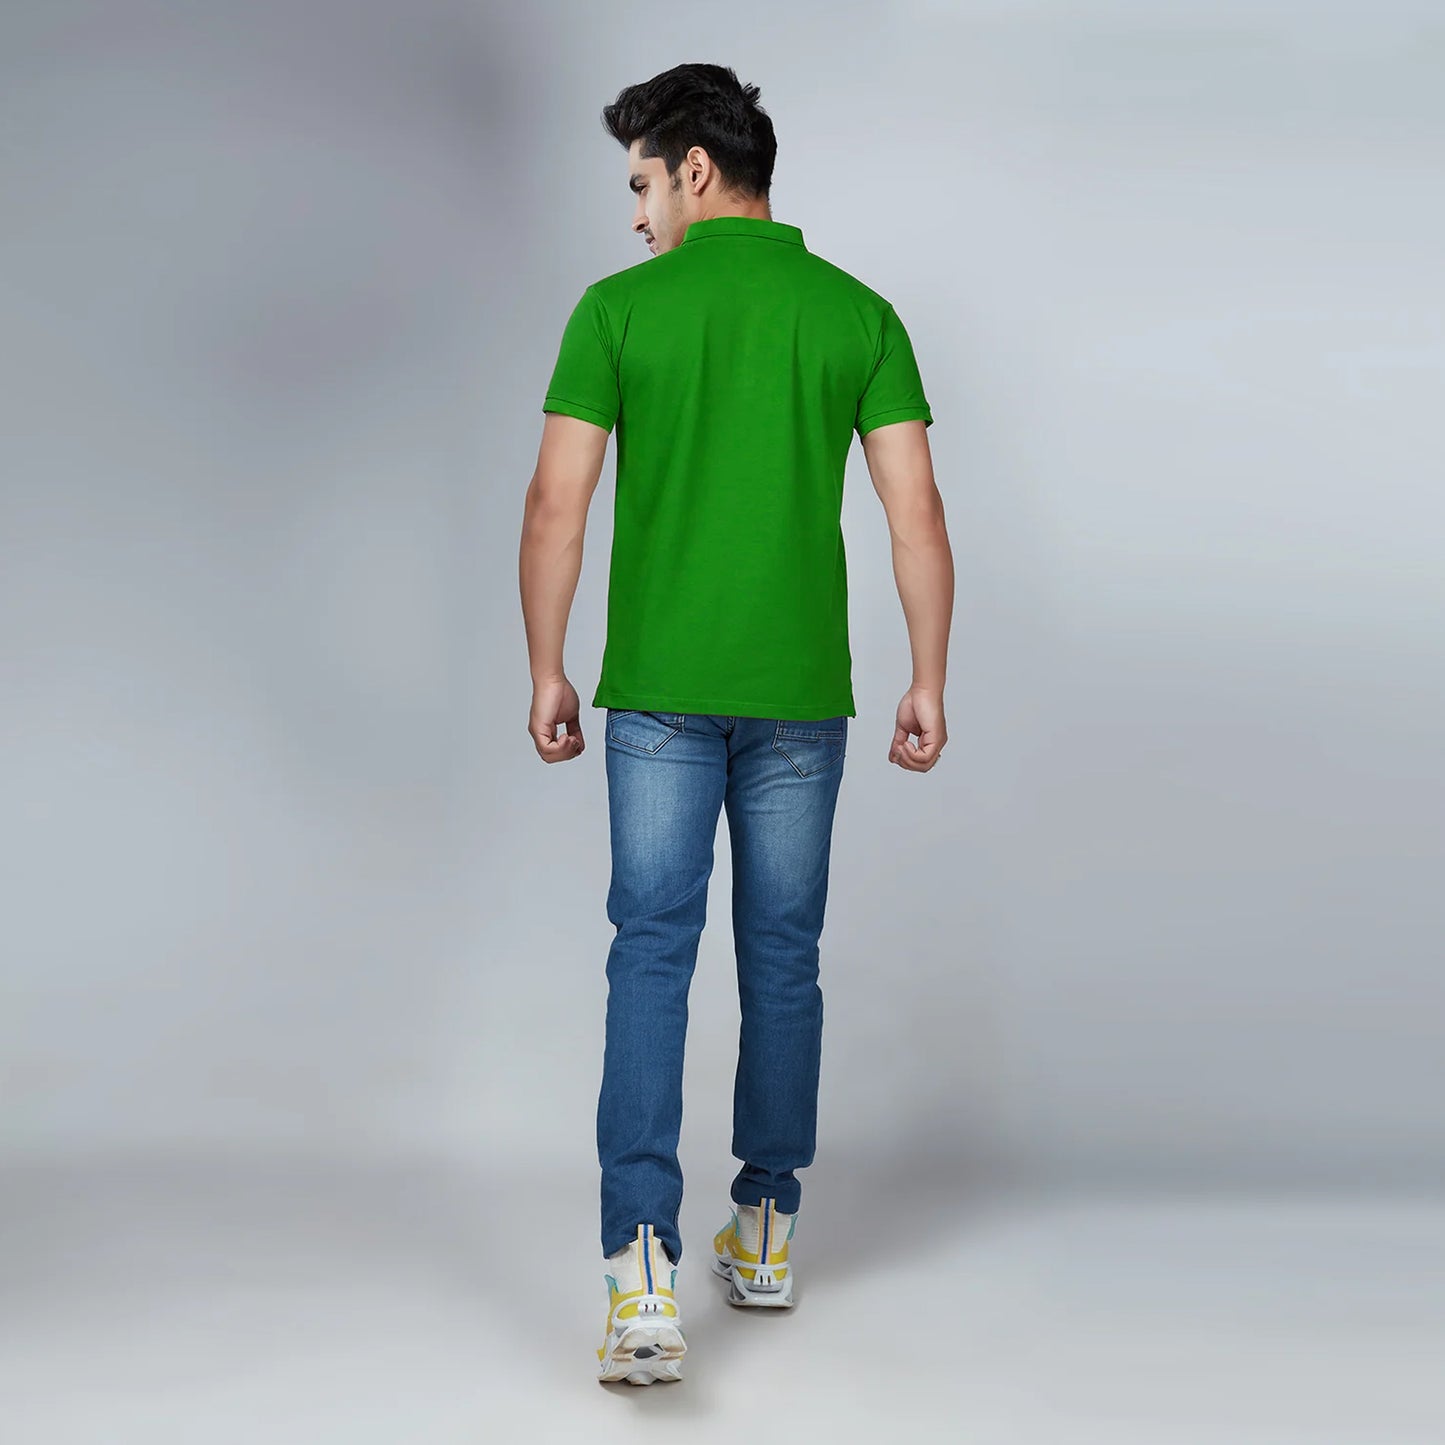 Men's Parrot Green Polo T-Shirt